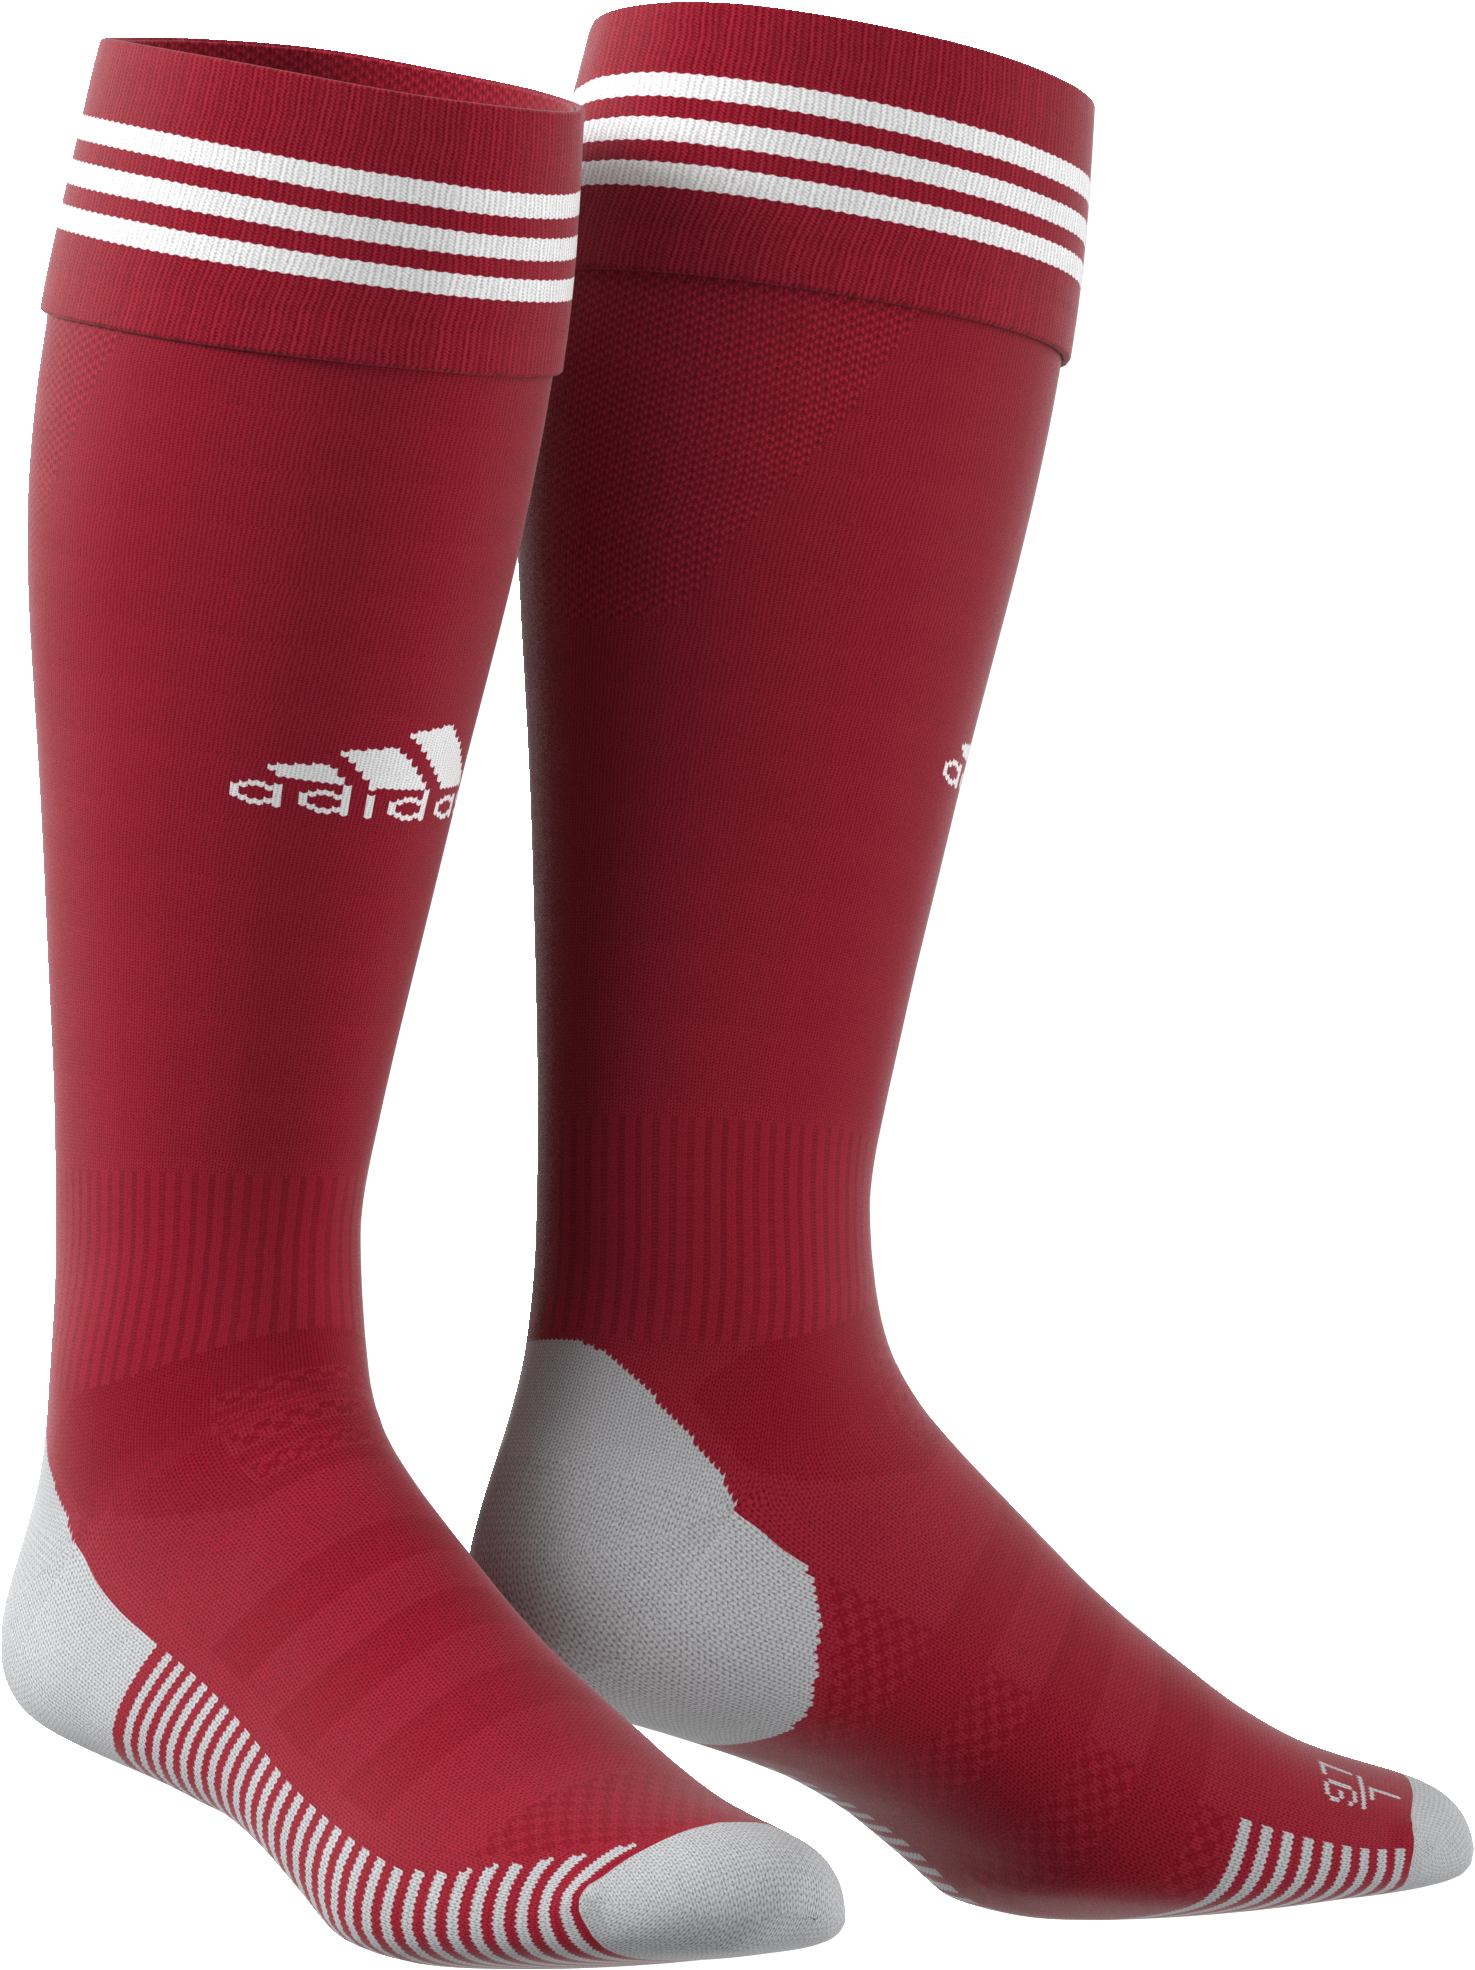 AdiSocks Knee Socks | adidas LOCKER ROOM